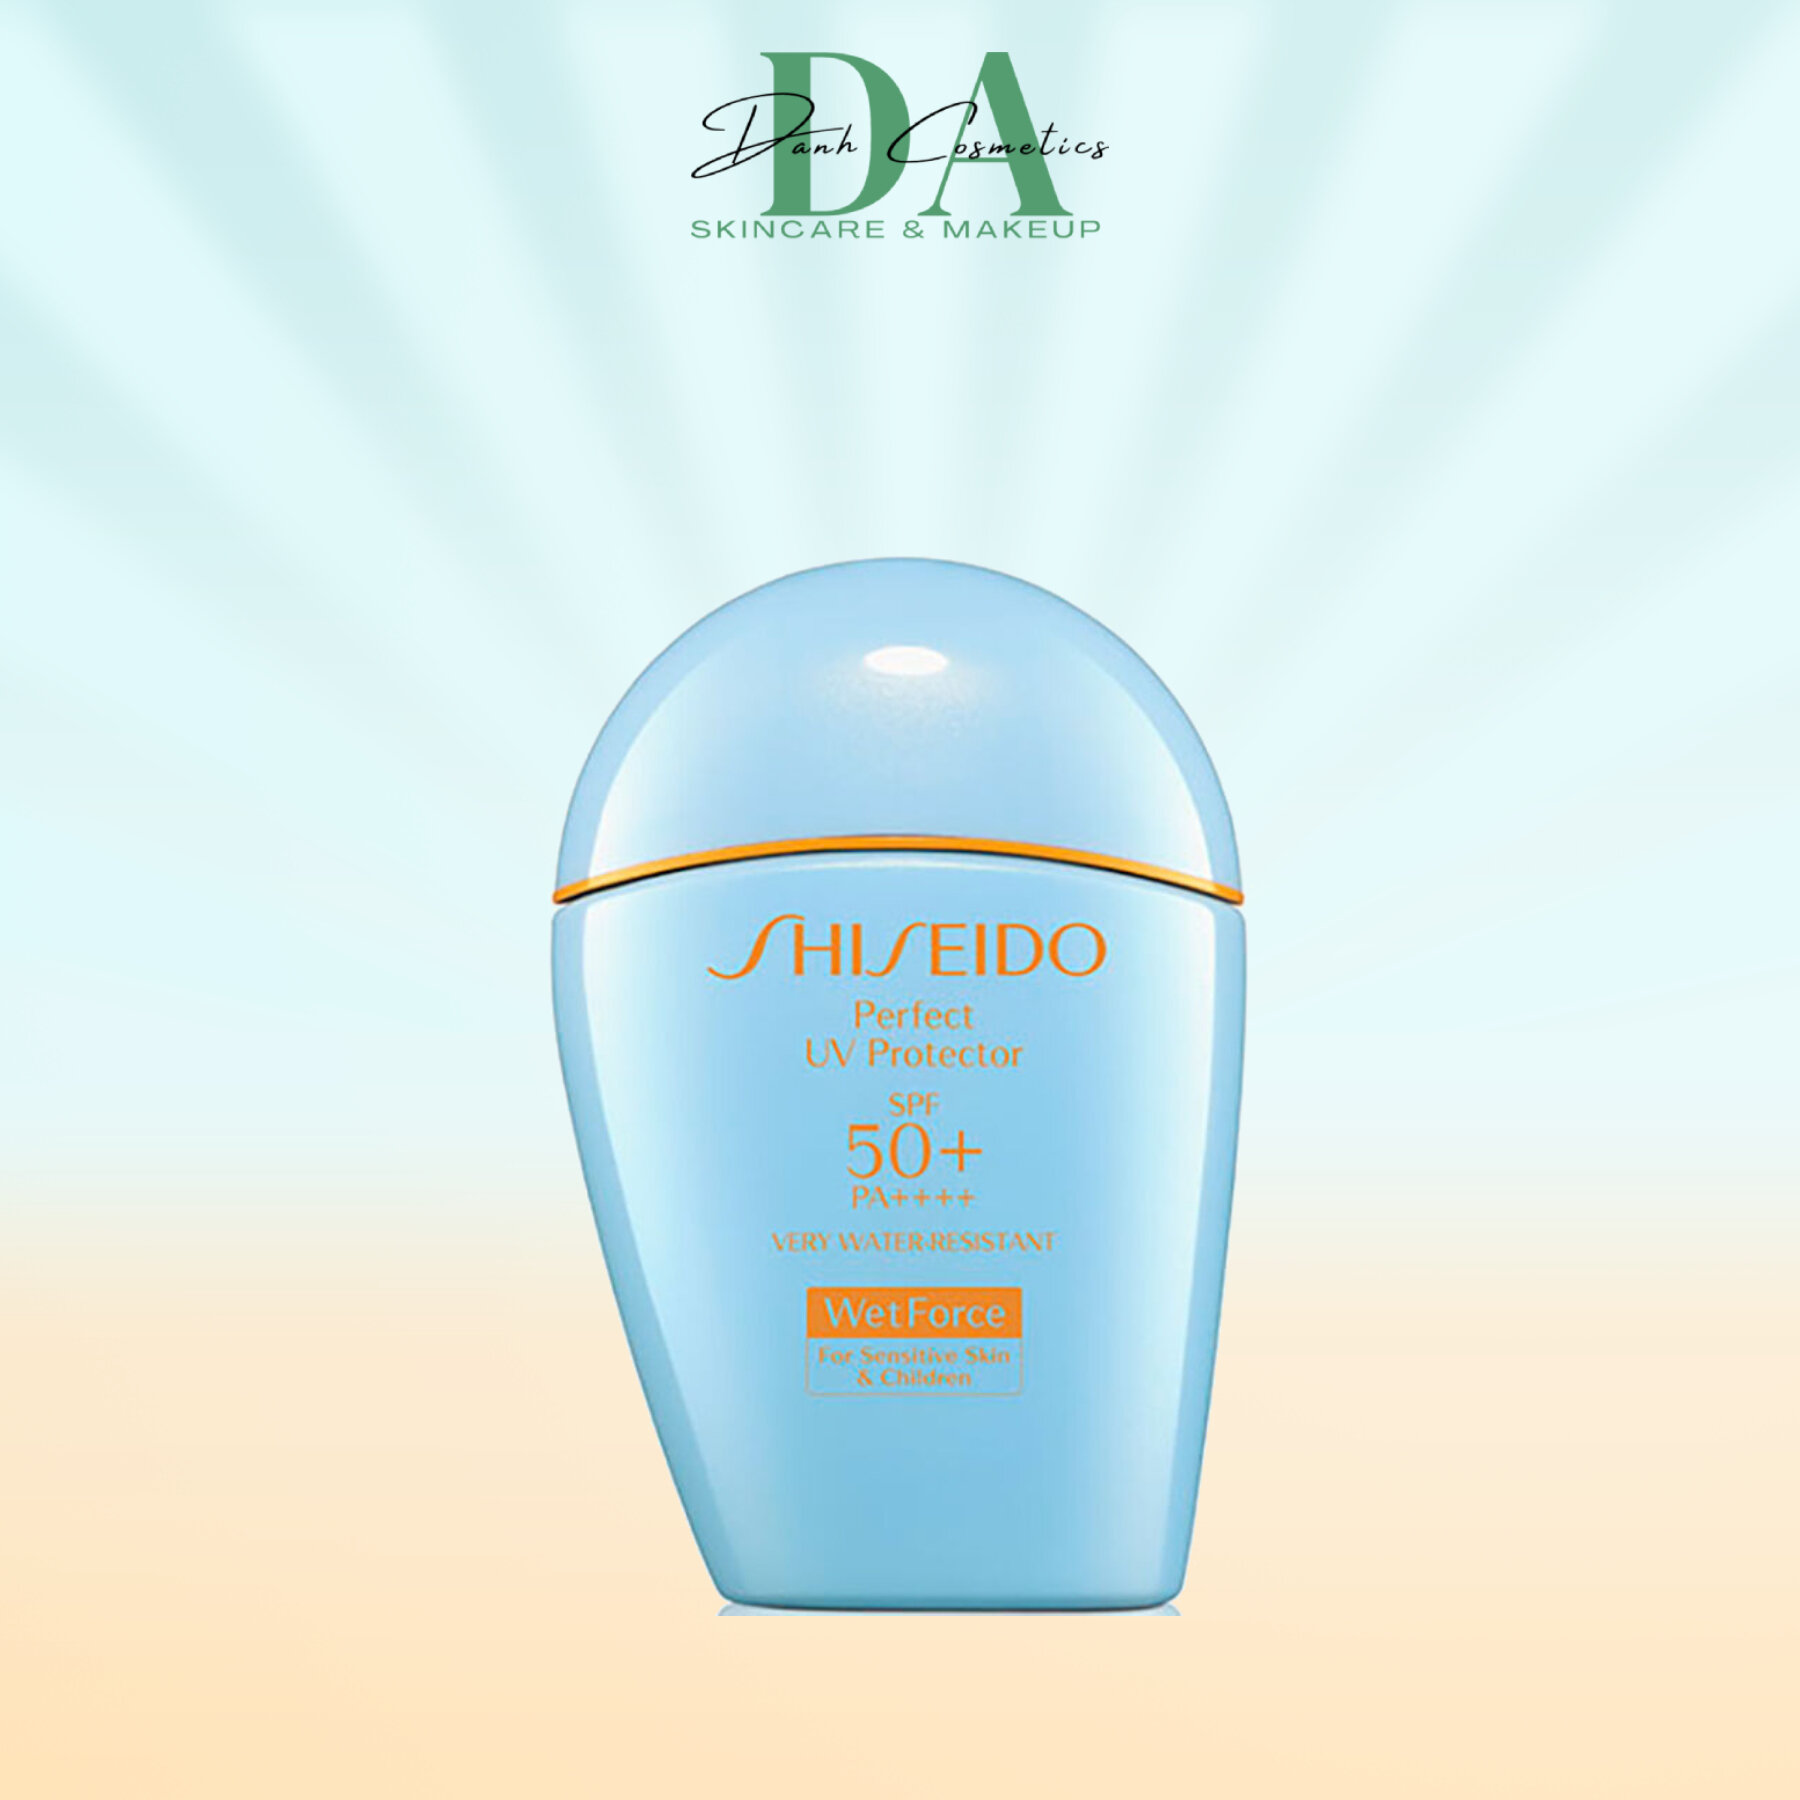 Sữa chống nắng nâng tông dành cho da nhạy cảm Shiseido GSC Perfect UV